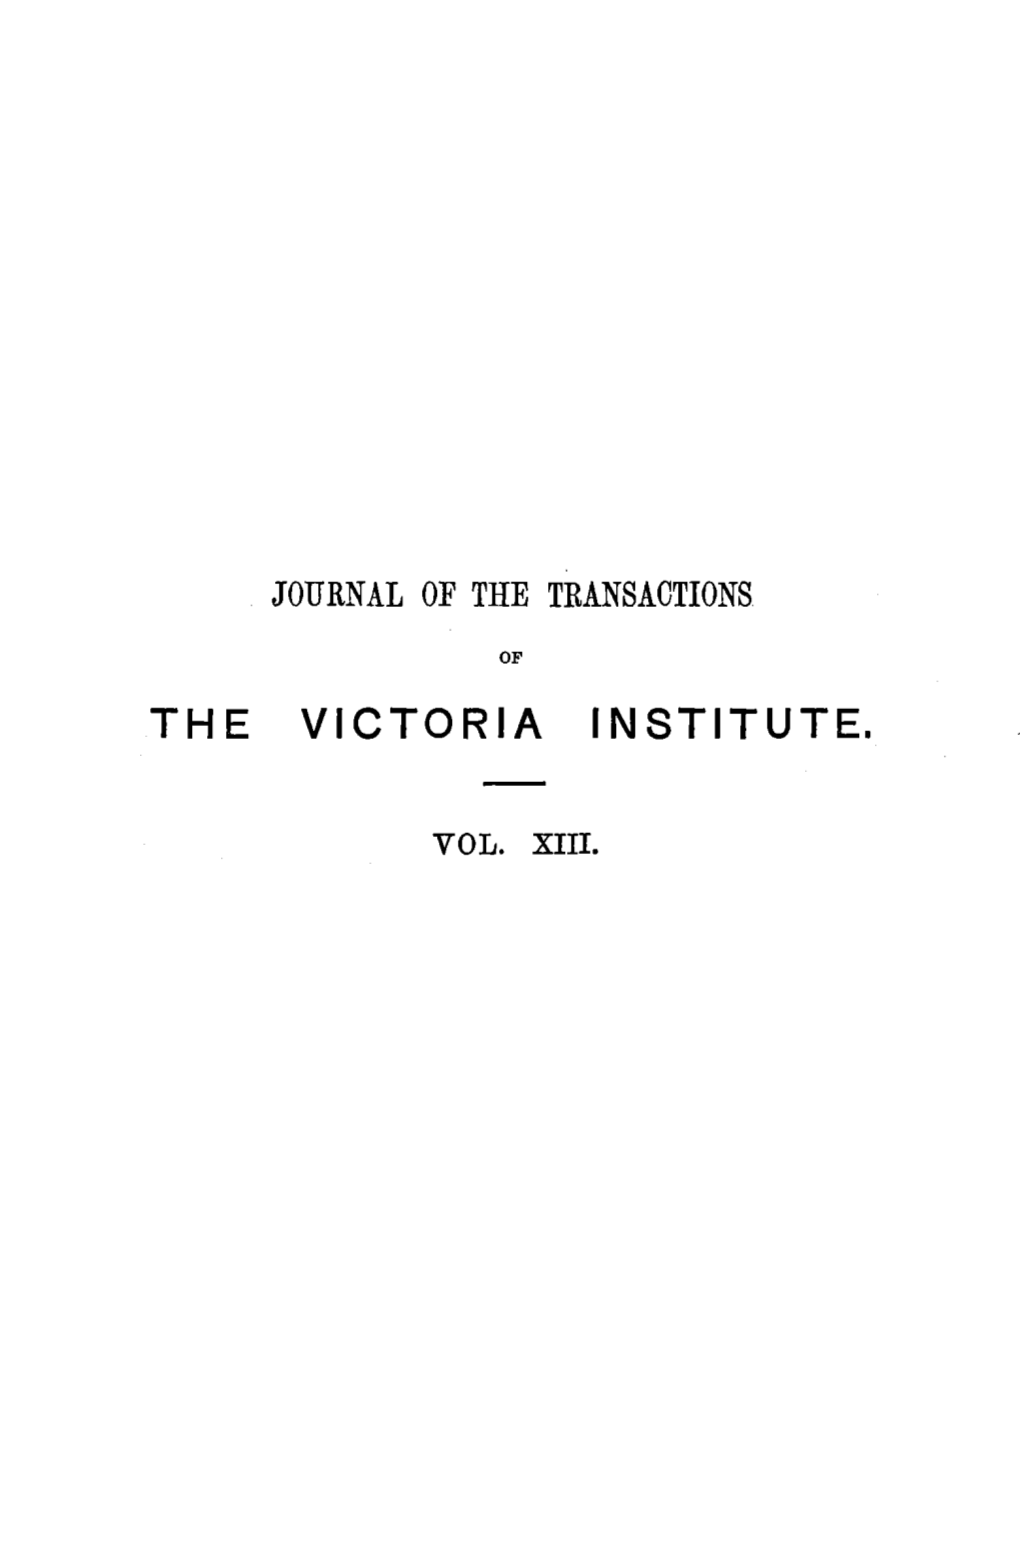 The Victoria Institute